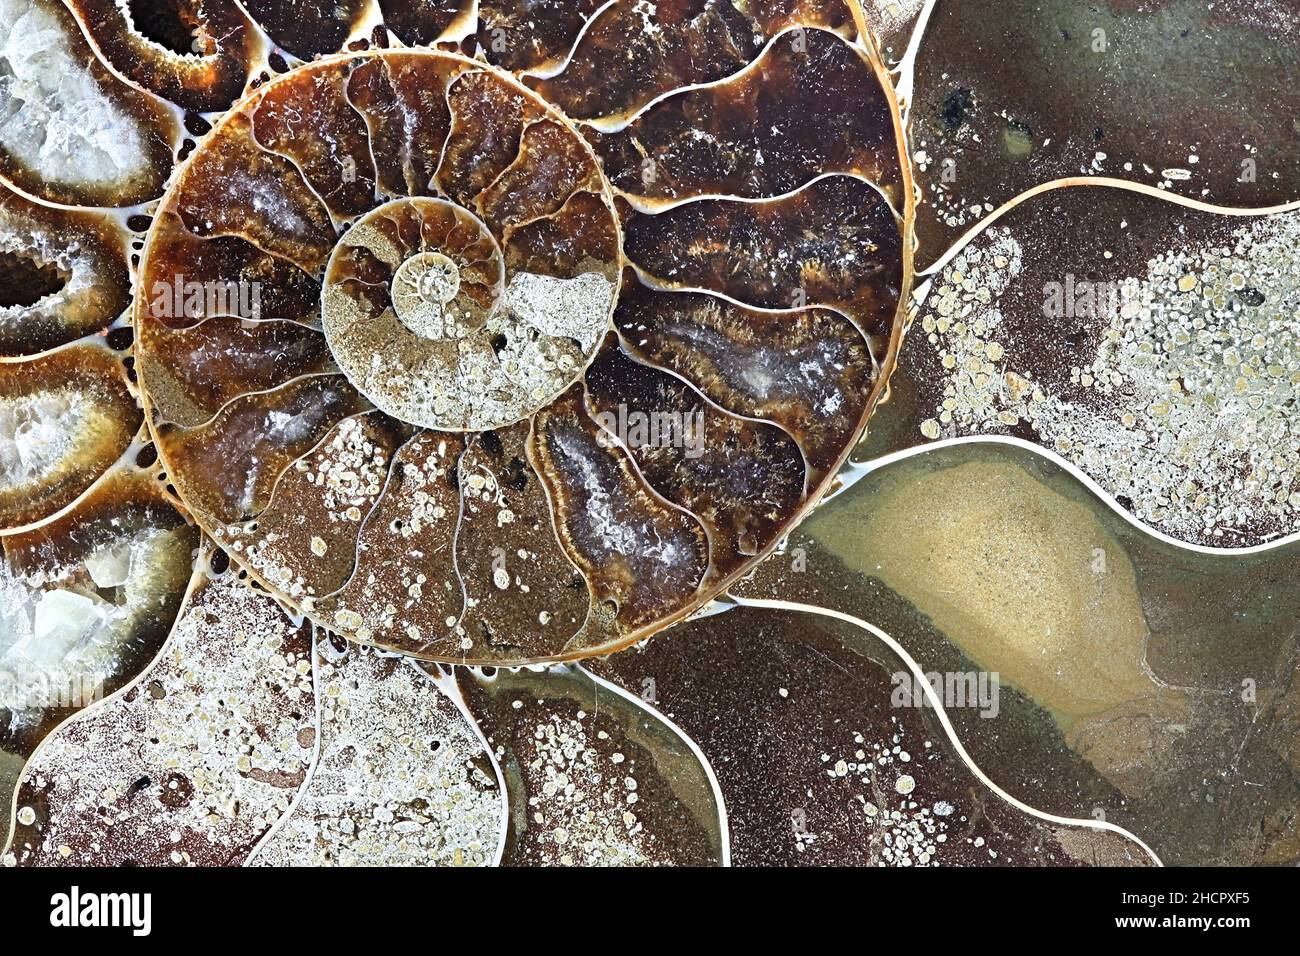 Dies ist prähistorischen versteinerten Weichtier Ammoniten, einer ausgestorbenen Meerestier genannt. Stockfoto